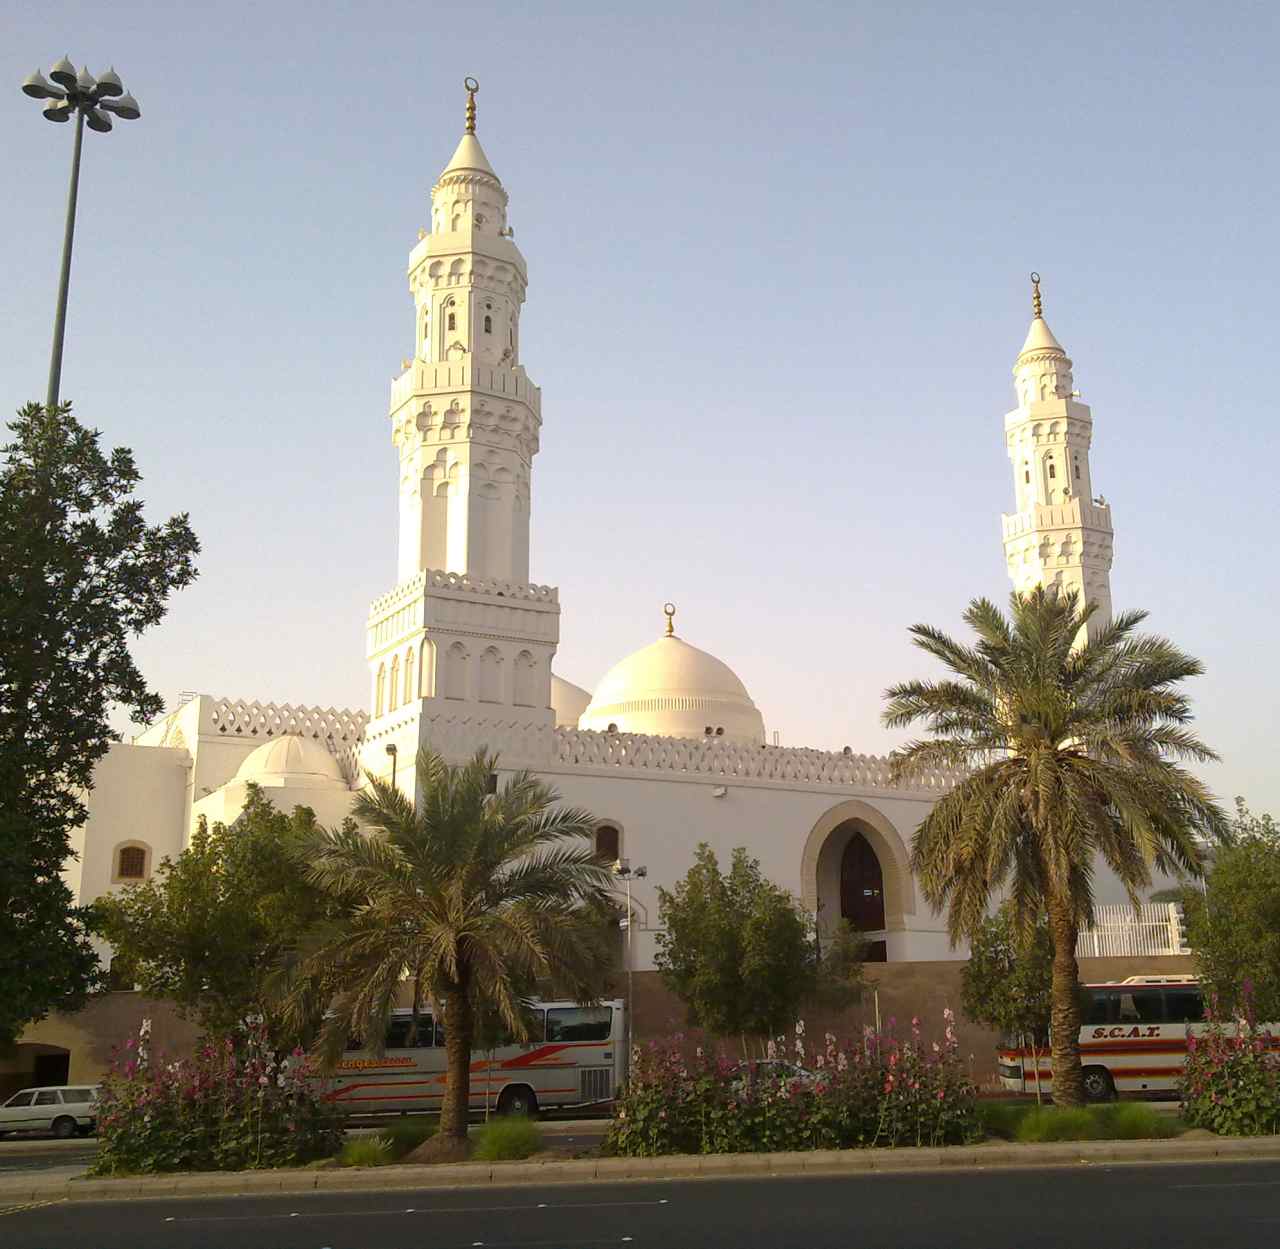 Masjid Al Qiblatayn mosque, Medina, Saudi Arabia